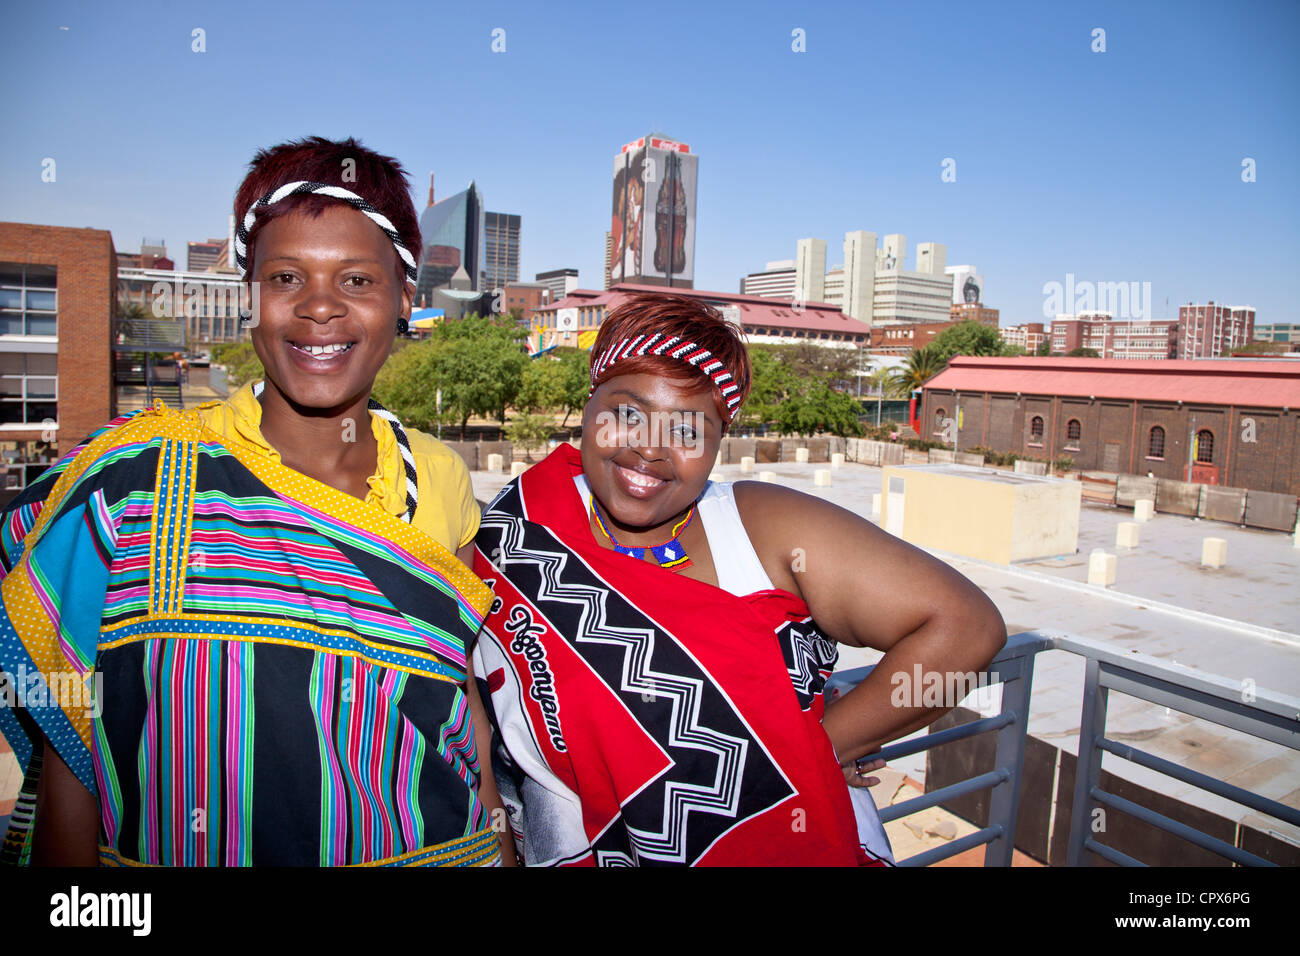 2 Donne Africane Vestito In Abiti Tradizionali Sorriso Per La Fotocamera Foto Stock Alamy